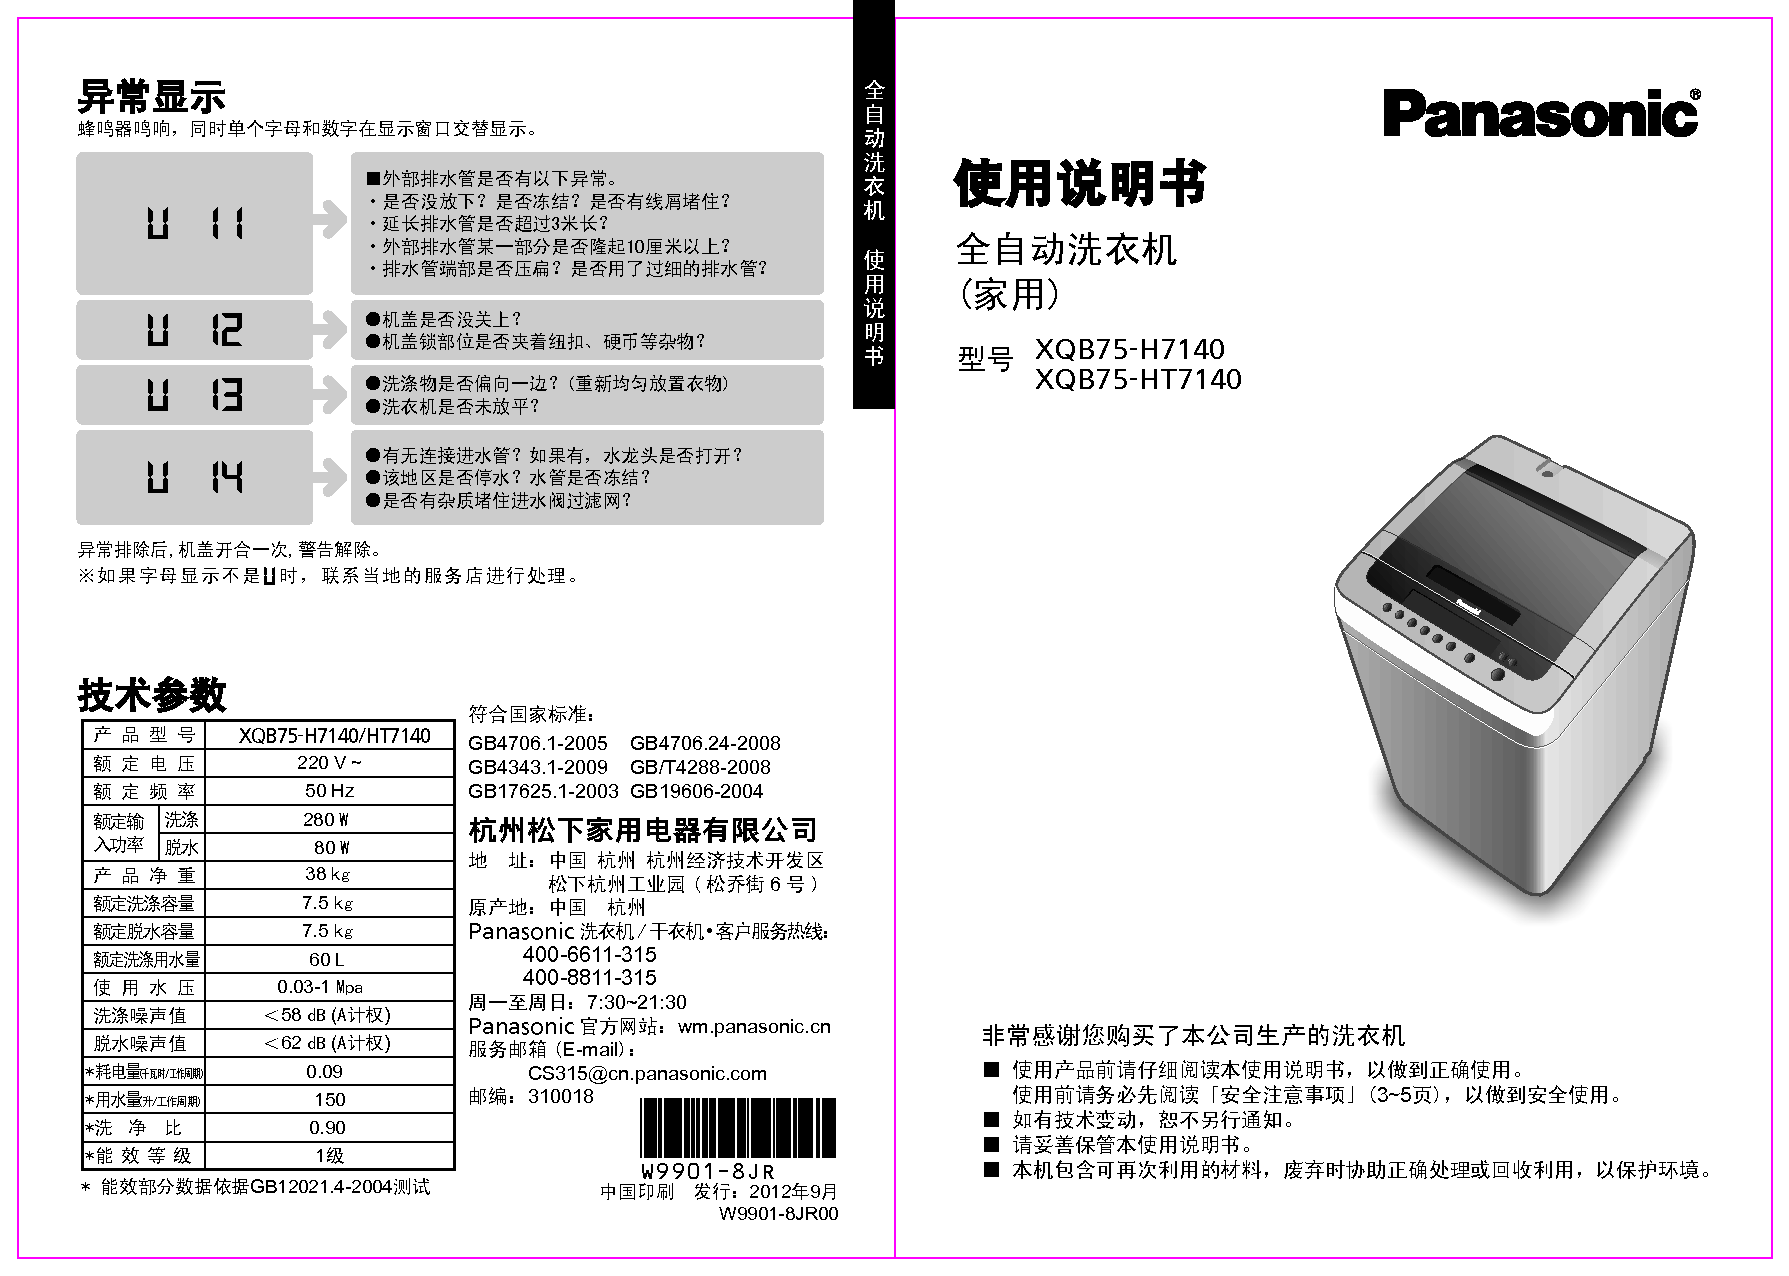 松下 Panasonic XQB75-H7140 说明书 封面